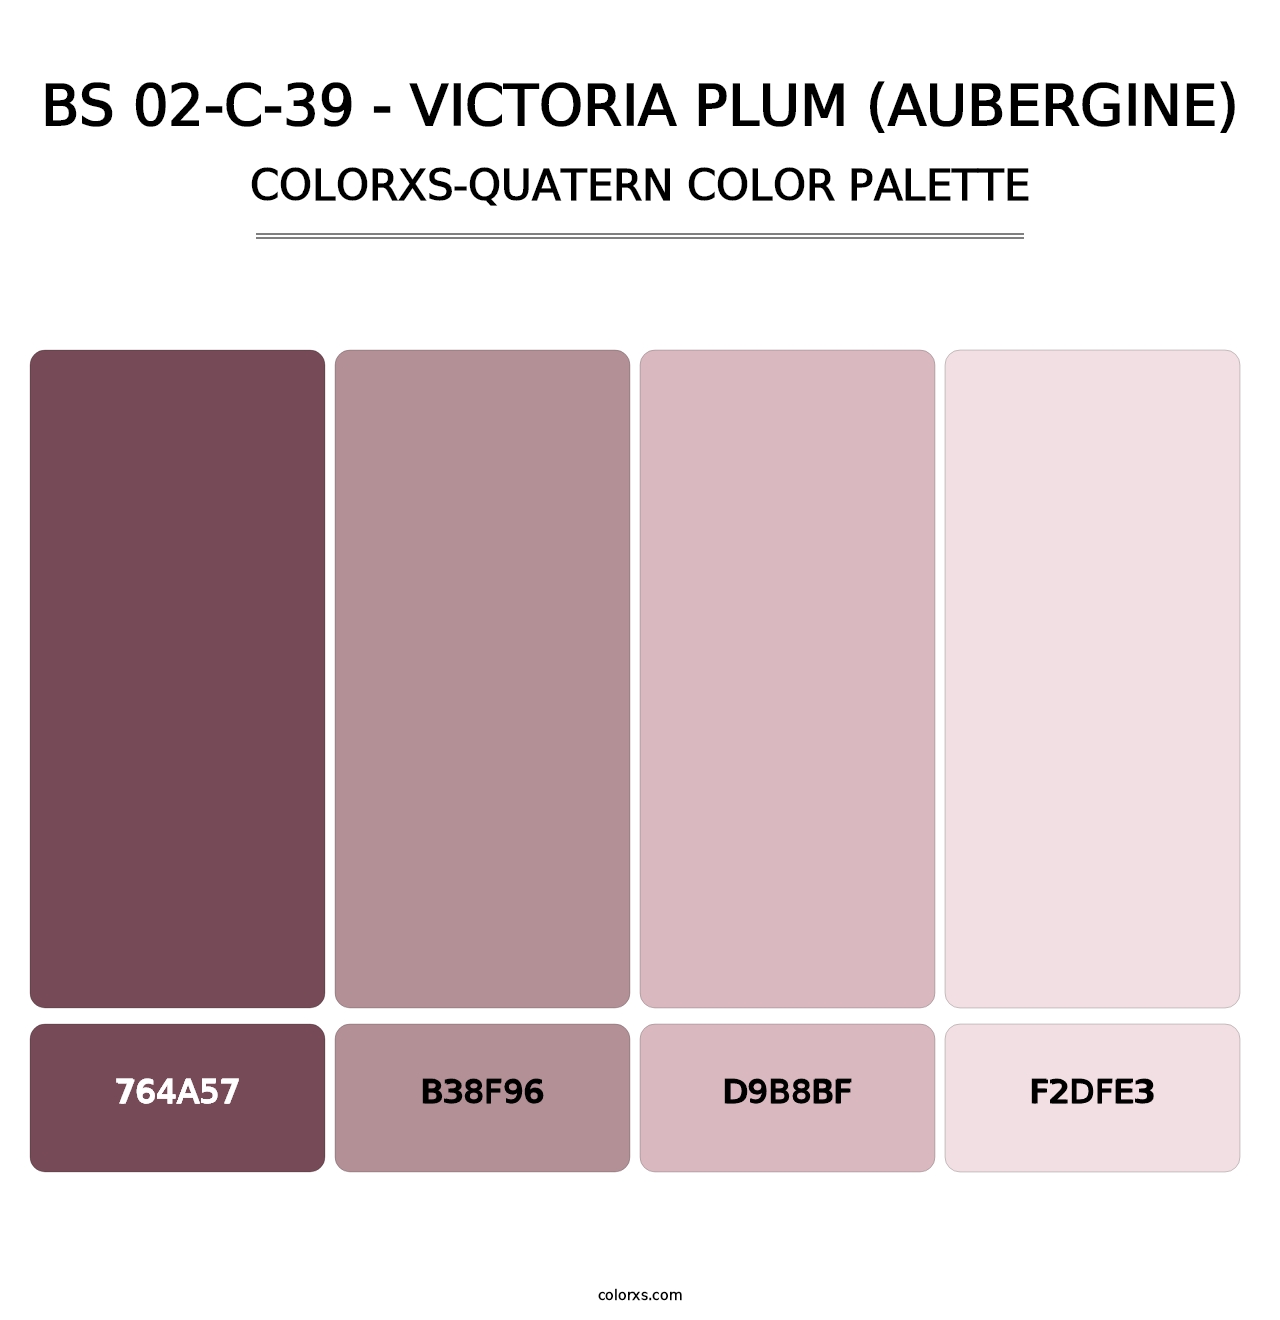 BS 02-C-39 - Victoria Plum (Aubergine) - Colorxs Quatern Palette